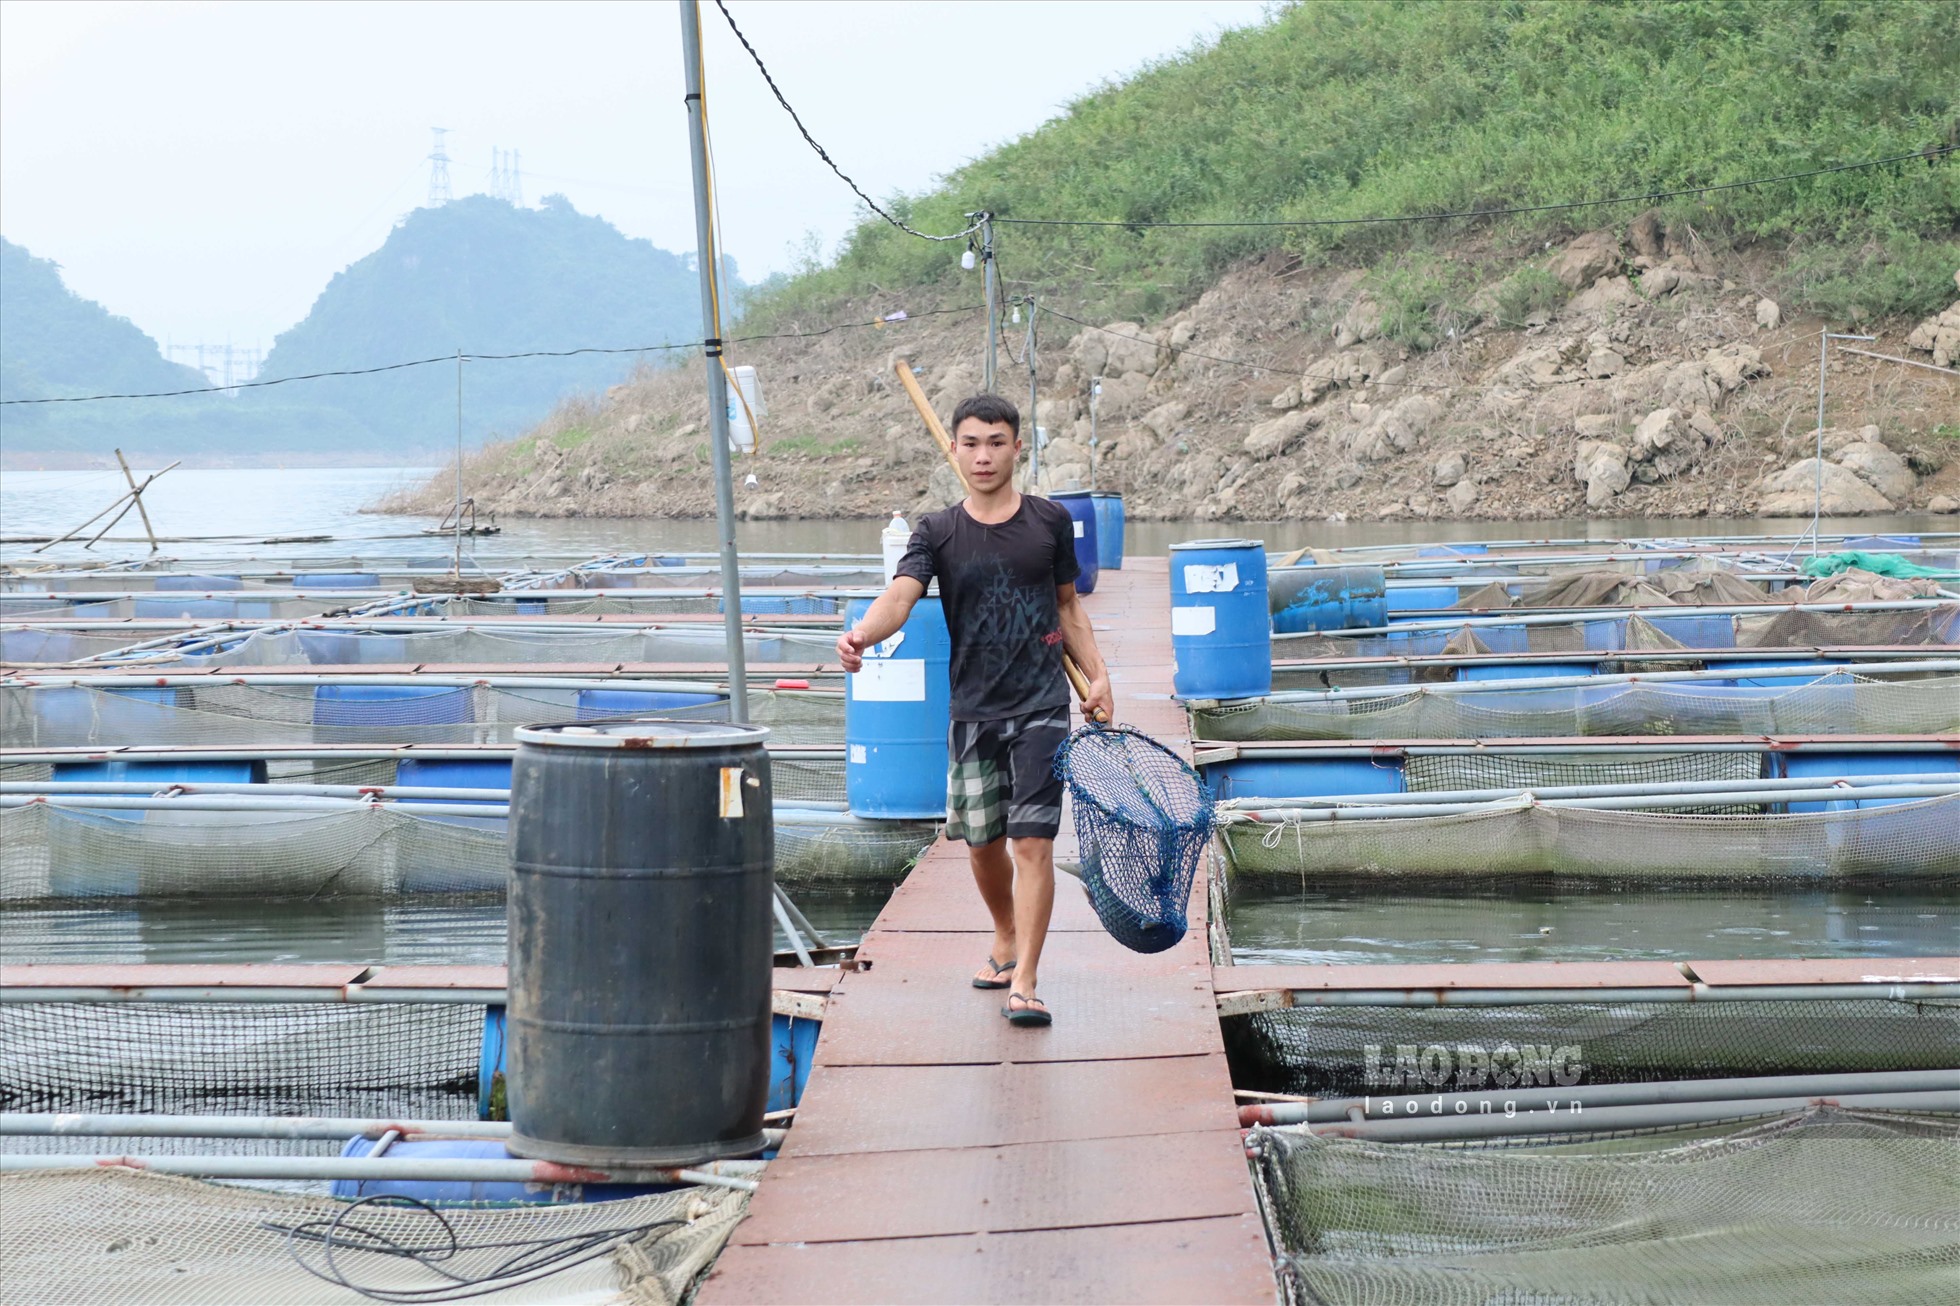 Phát triển nuôi cá lồng vùng hồ cũng đã tạo việc làm và thu nhập ổn định cho hơn 5.000 lao động. Từ đó, nâng cao chất lượng đời sống của người dân vùng lòng hồ Hòa Bình.